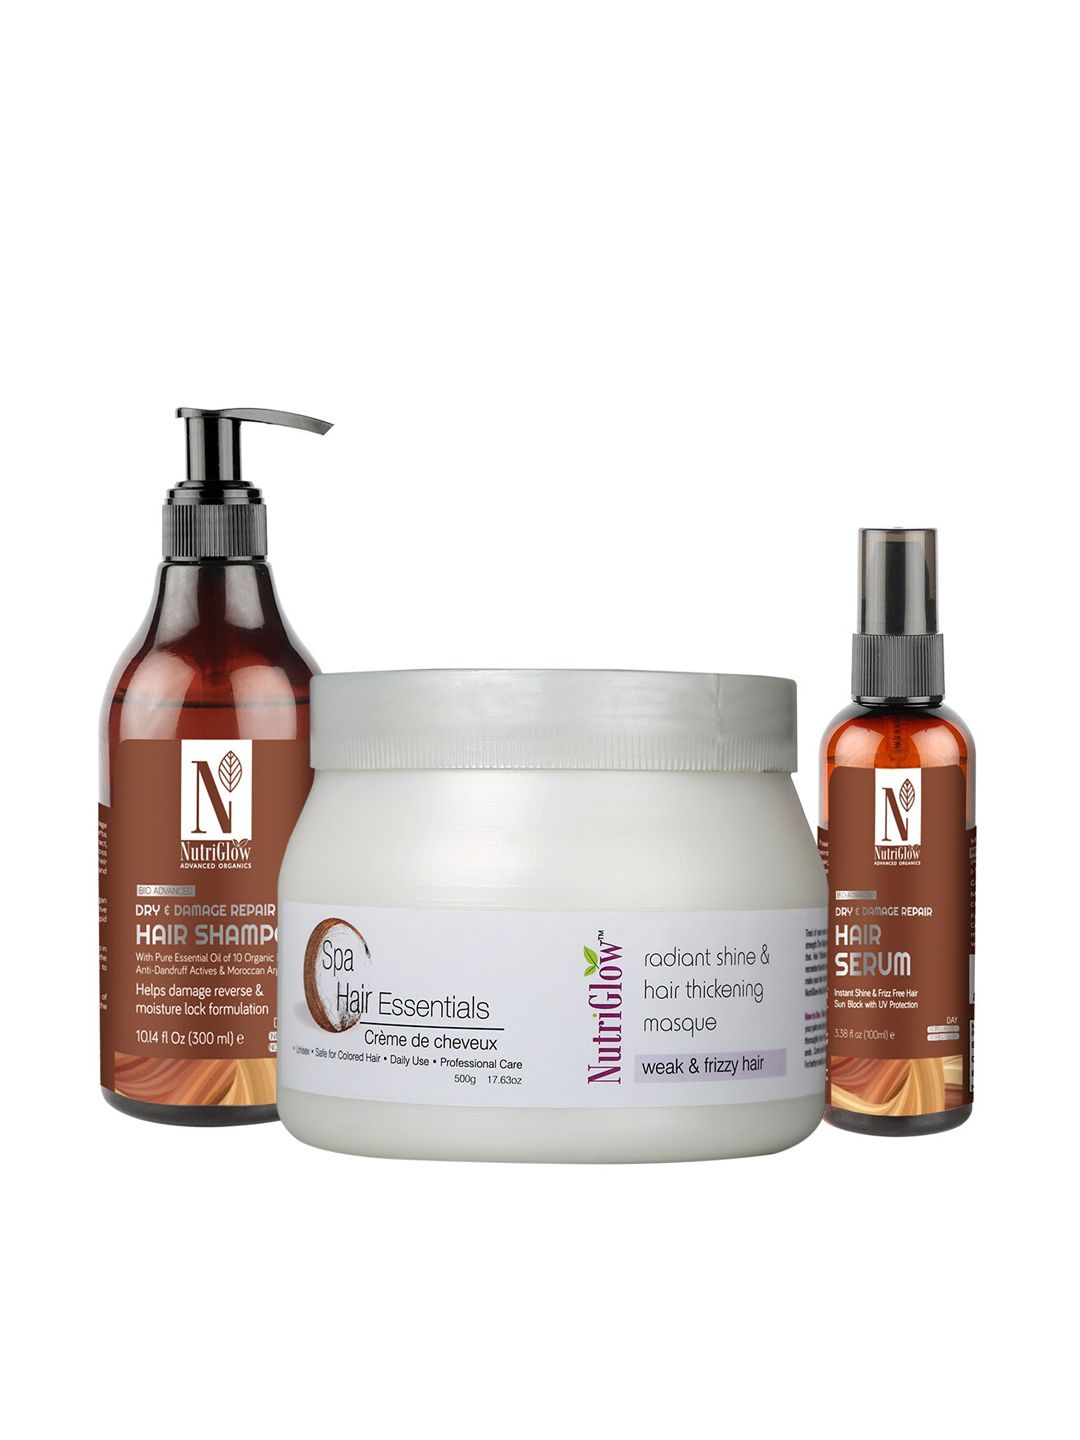 Nutriglow Advanced Organics Hair Spa Masque 500 g - Hair Serum 100 ml - Shampoo 300 ml Price in India